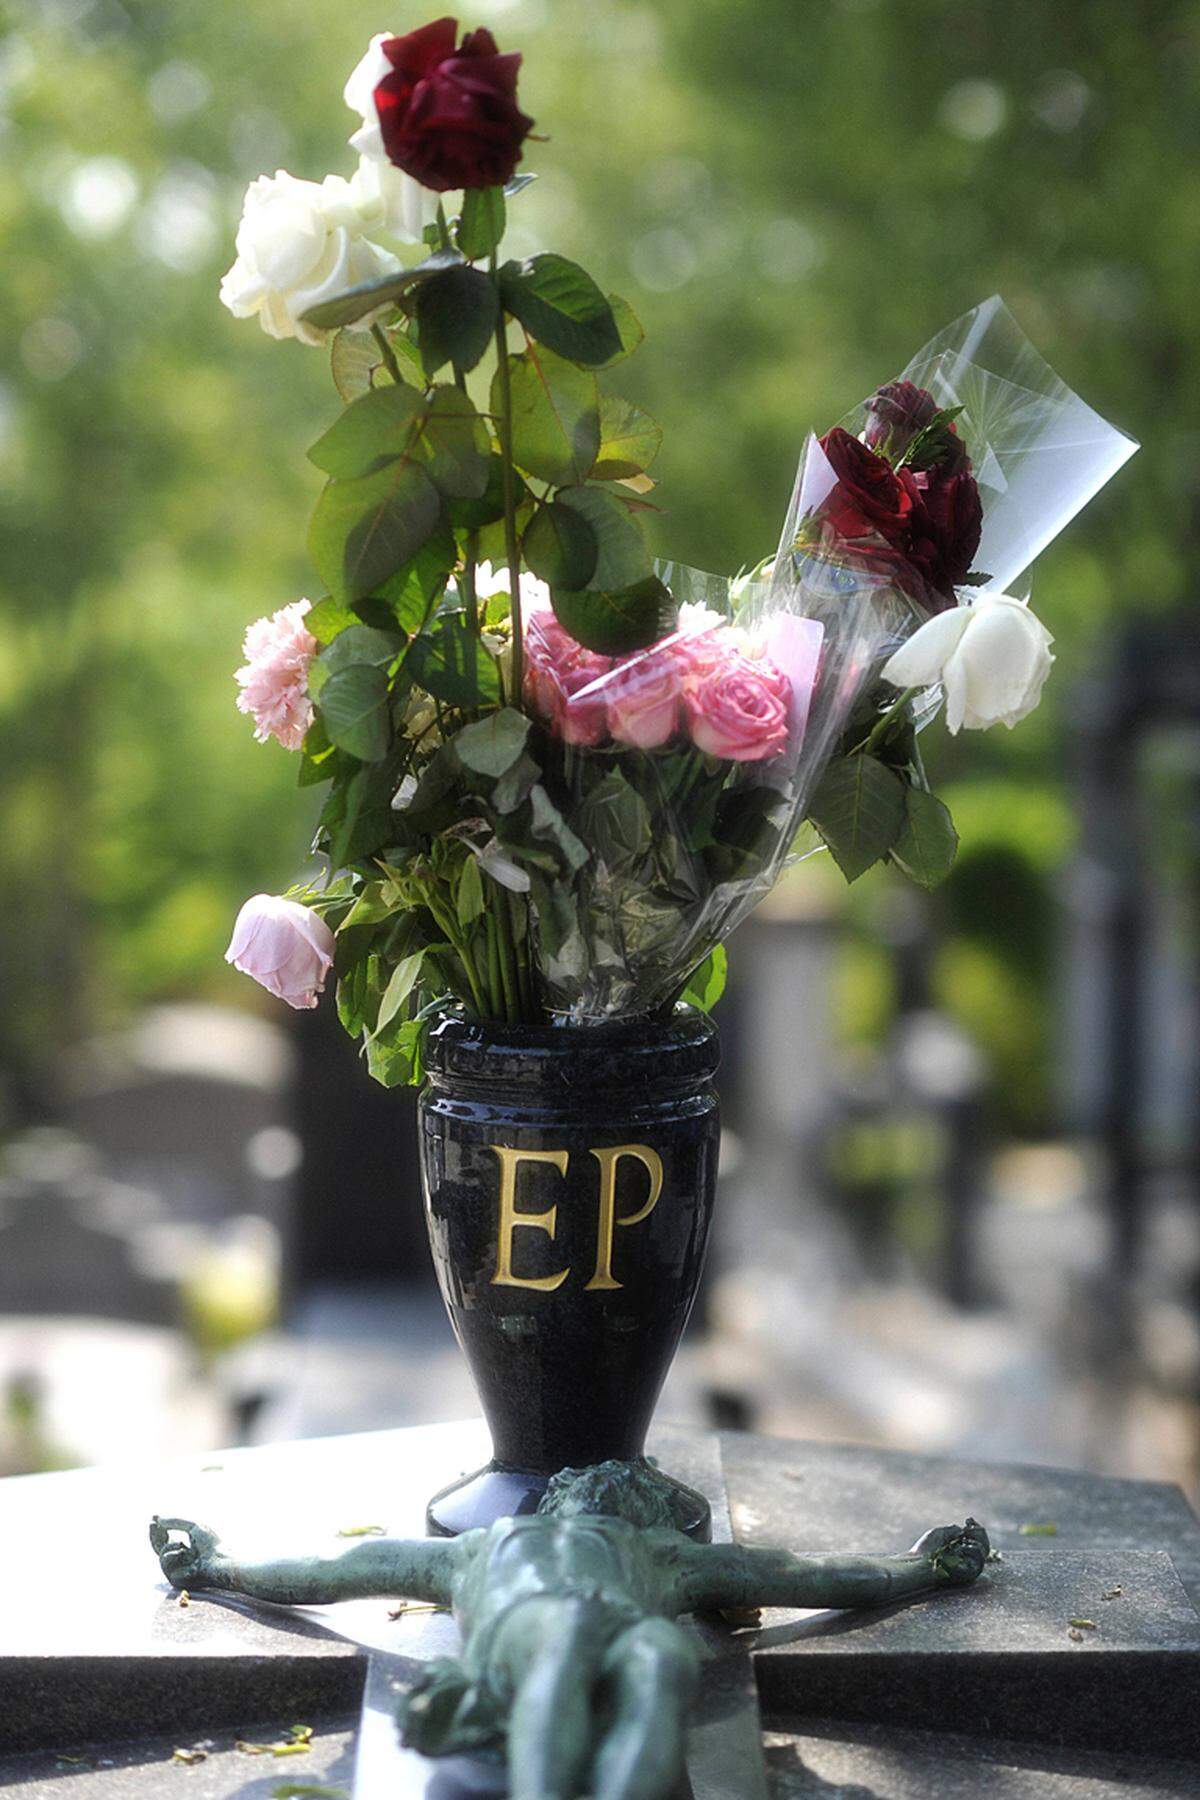 Am 10. Oktober 1963 starb Édith Piaf in Südfrankreich an den Folgen innerer Blutungen. Sie wurde heimlich nach Paris gebracht. Am Tag darauf wurde in der französischer Hauptstadt ein falscher Todesschein ausgestellt.